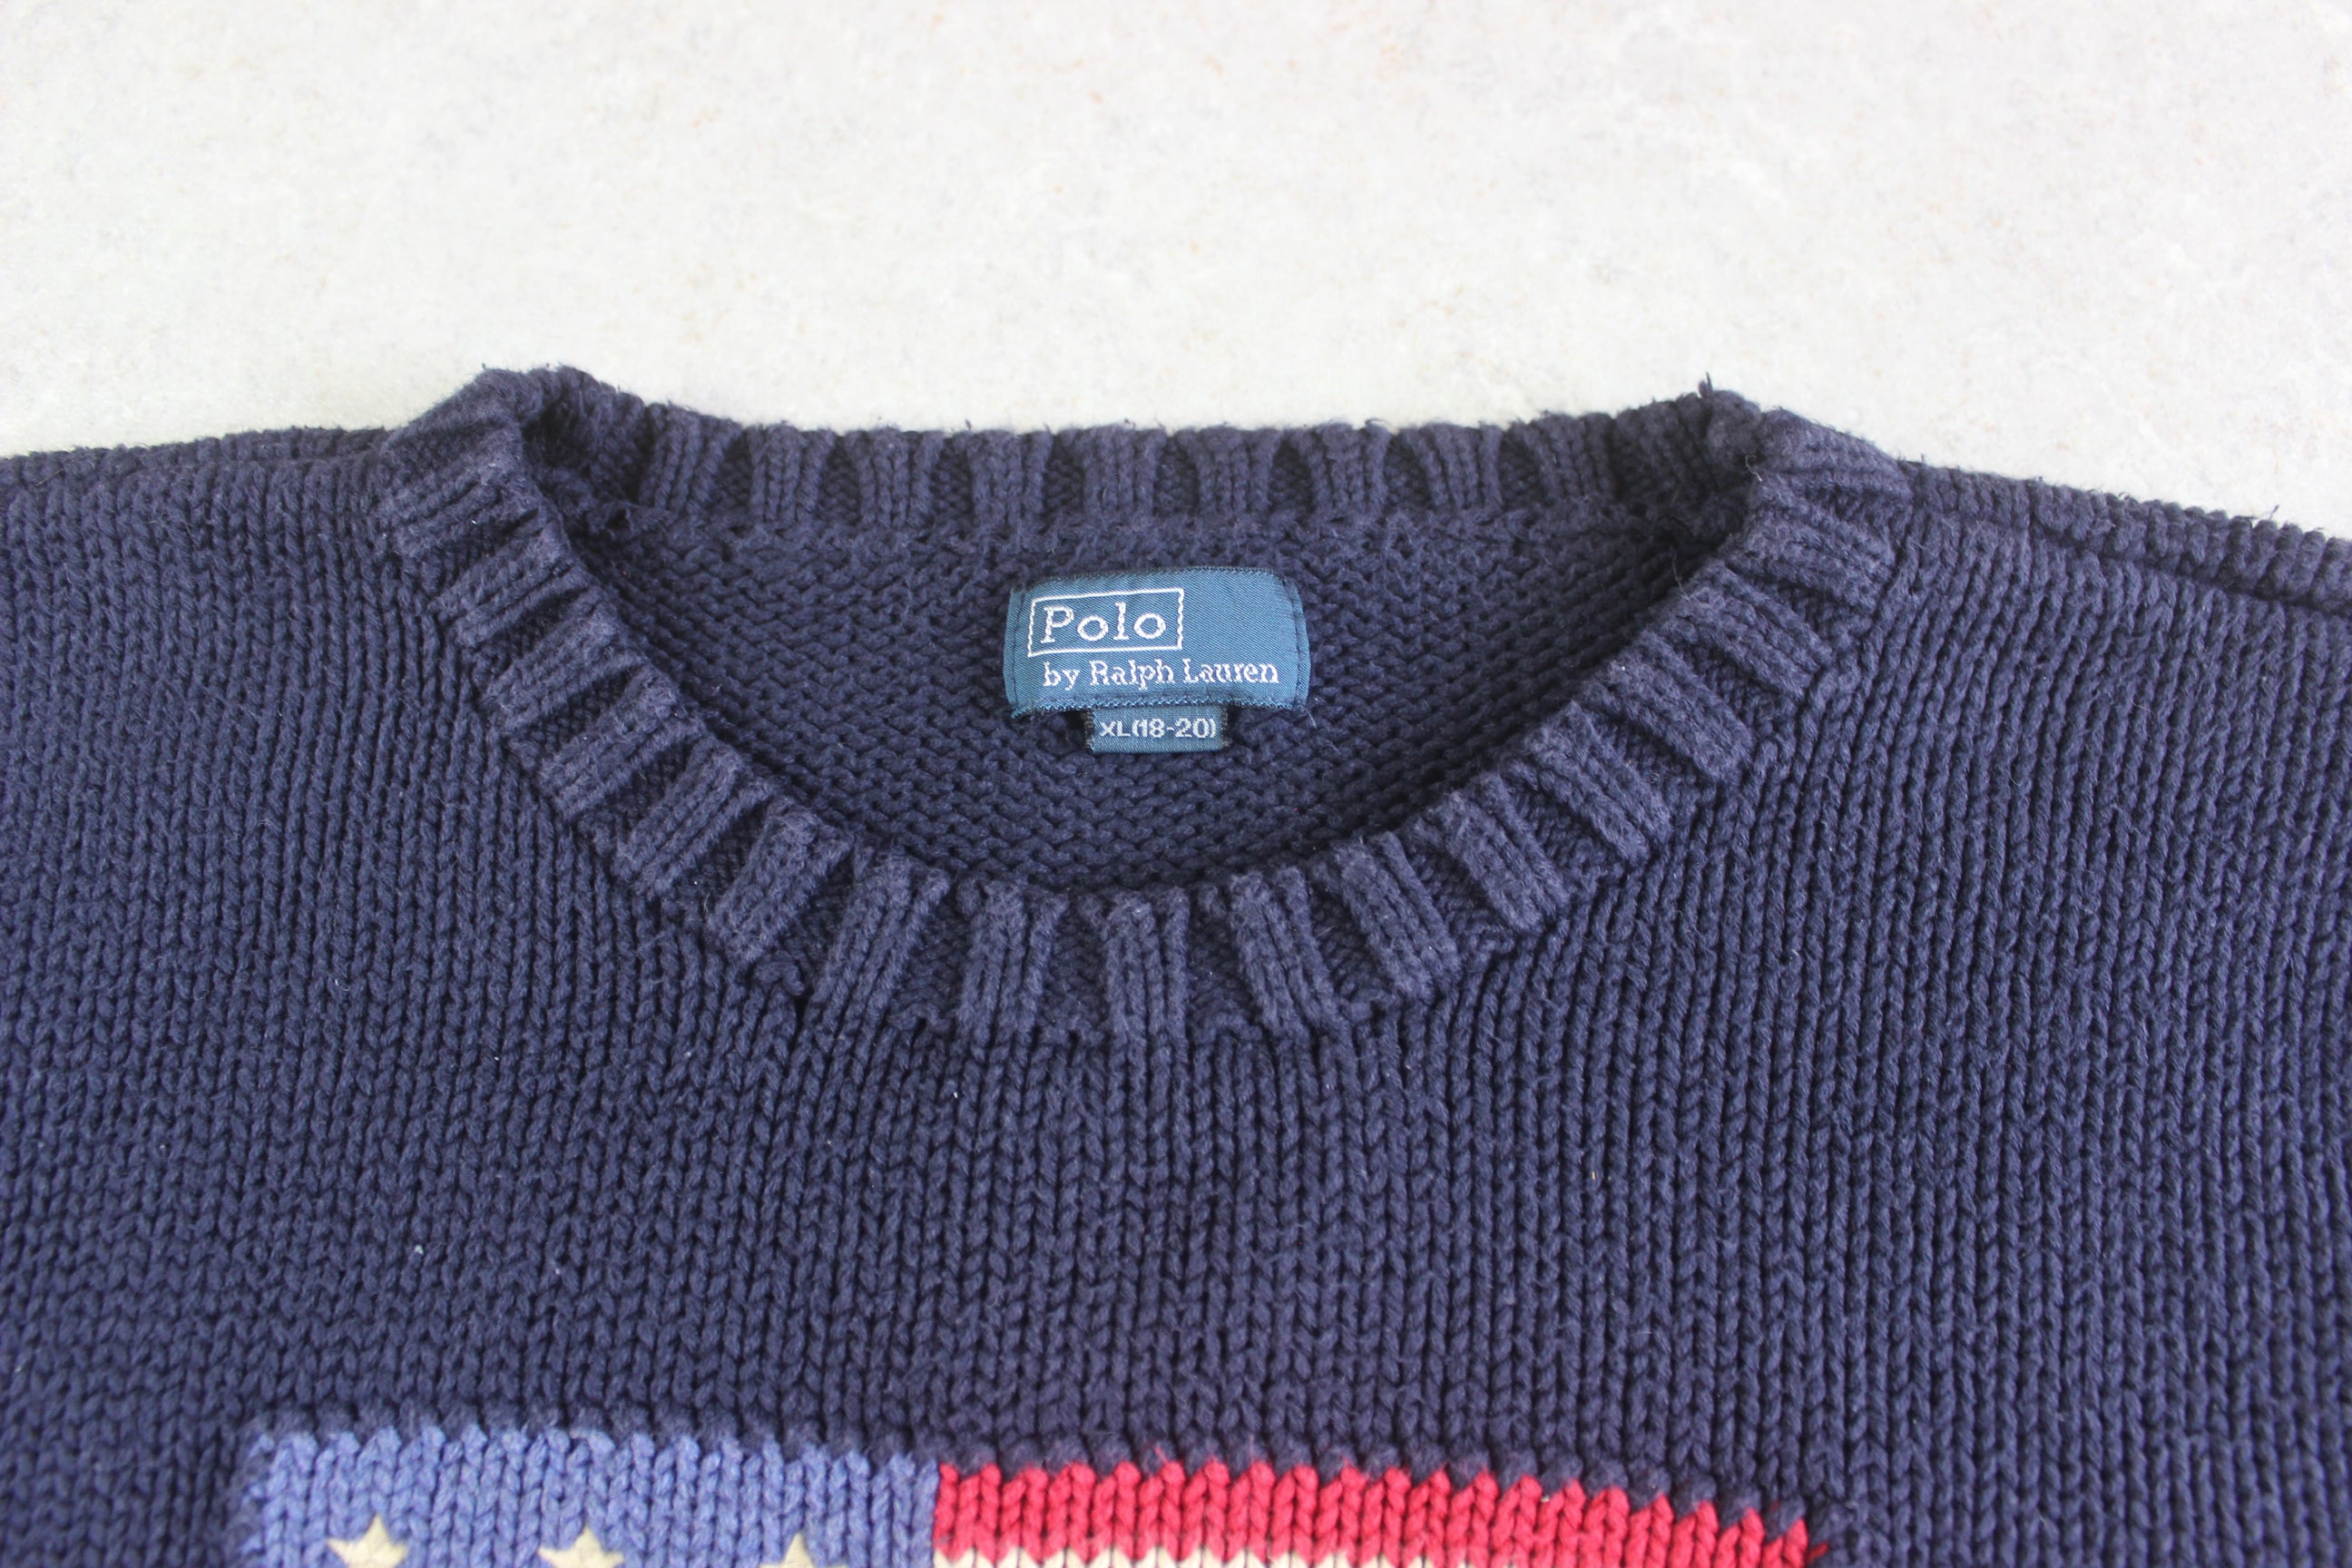 Polo Ralph Lauren - USA Flag Cotton Knit Jumper - Navy Blue